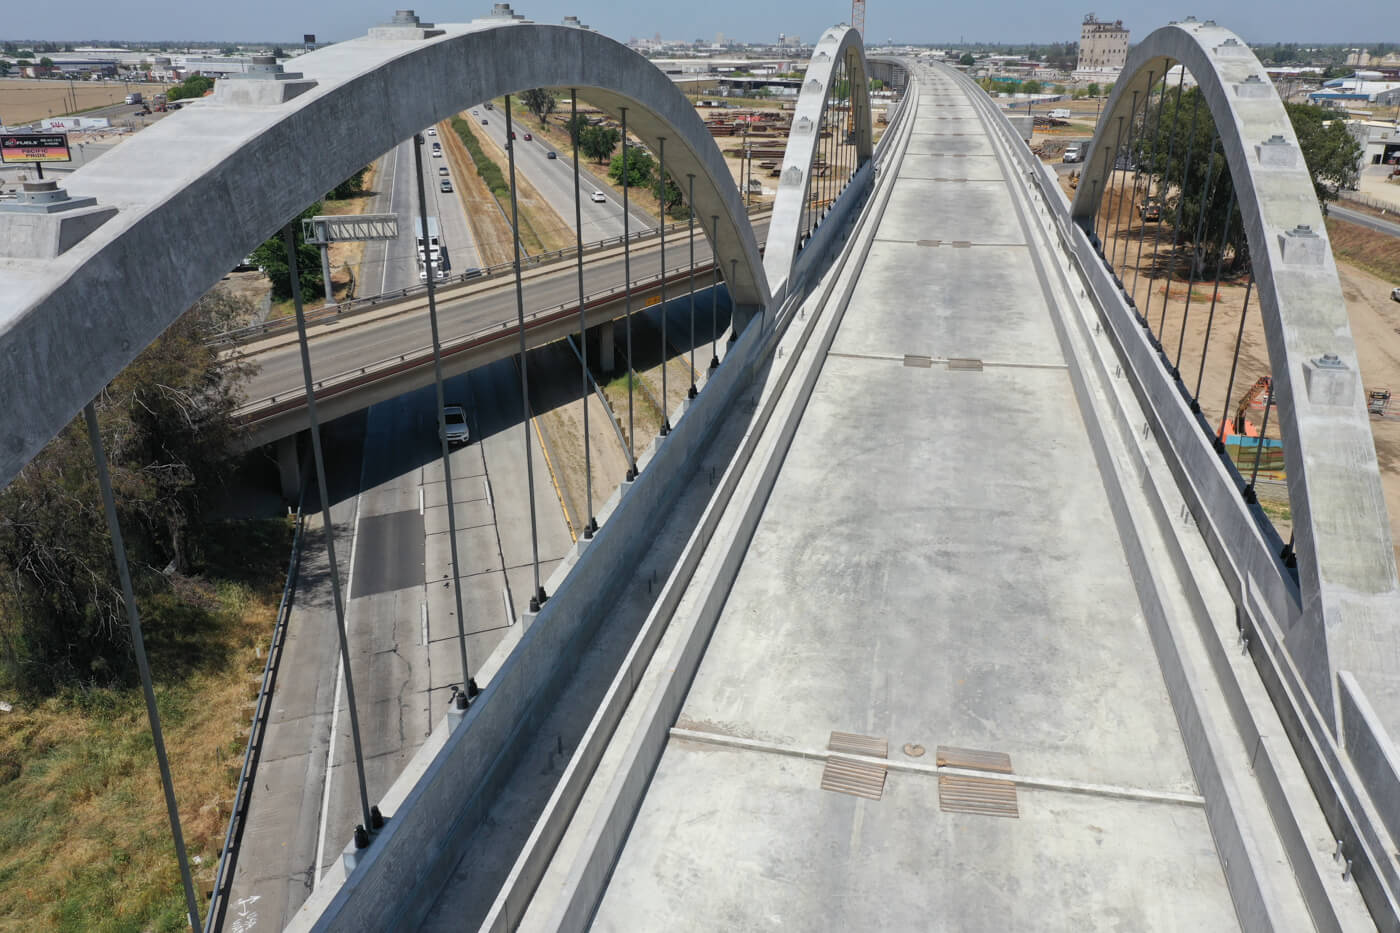 Concrete bridge above a freeway. The bridge has 3 concrete arches. 